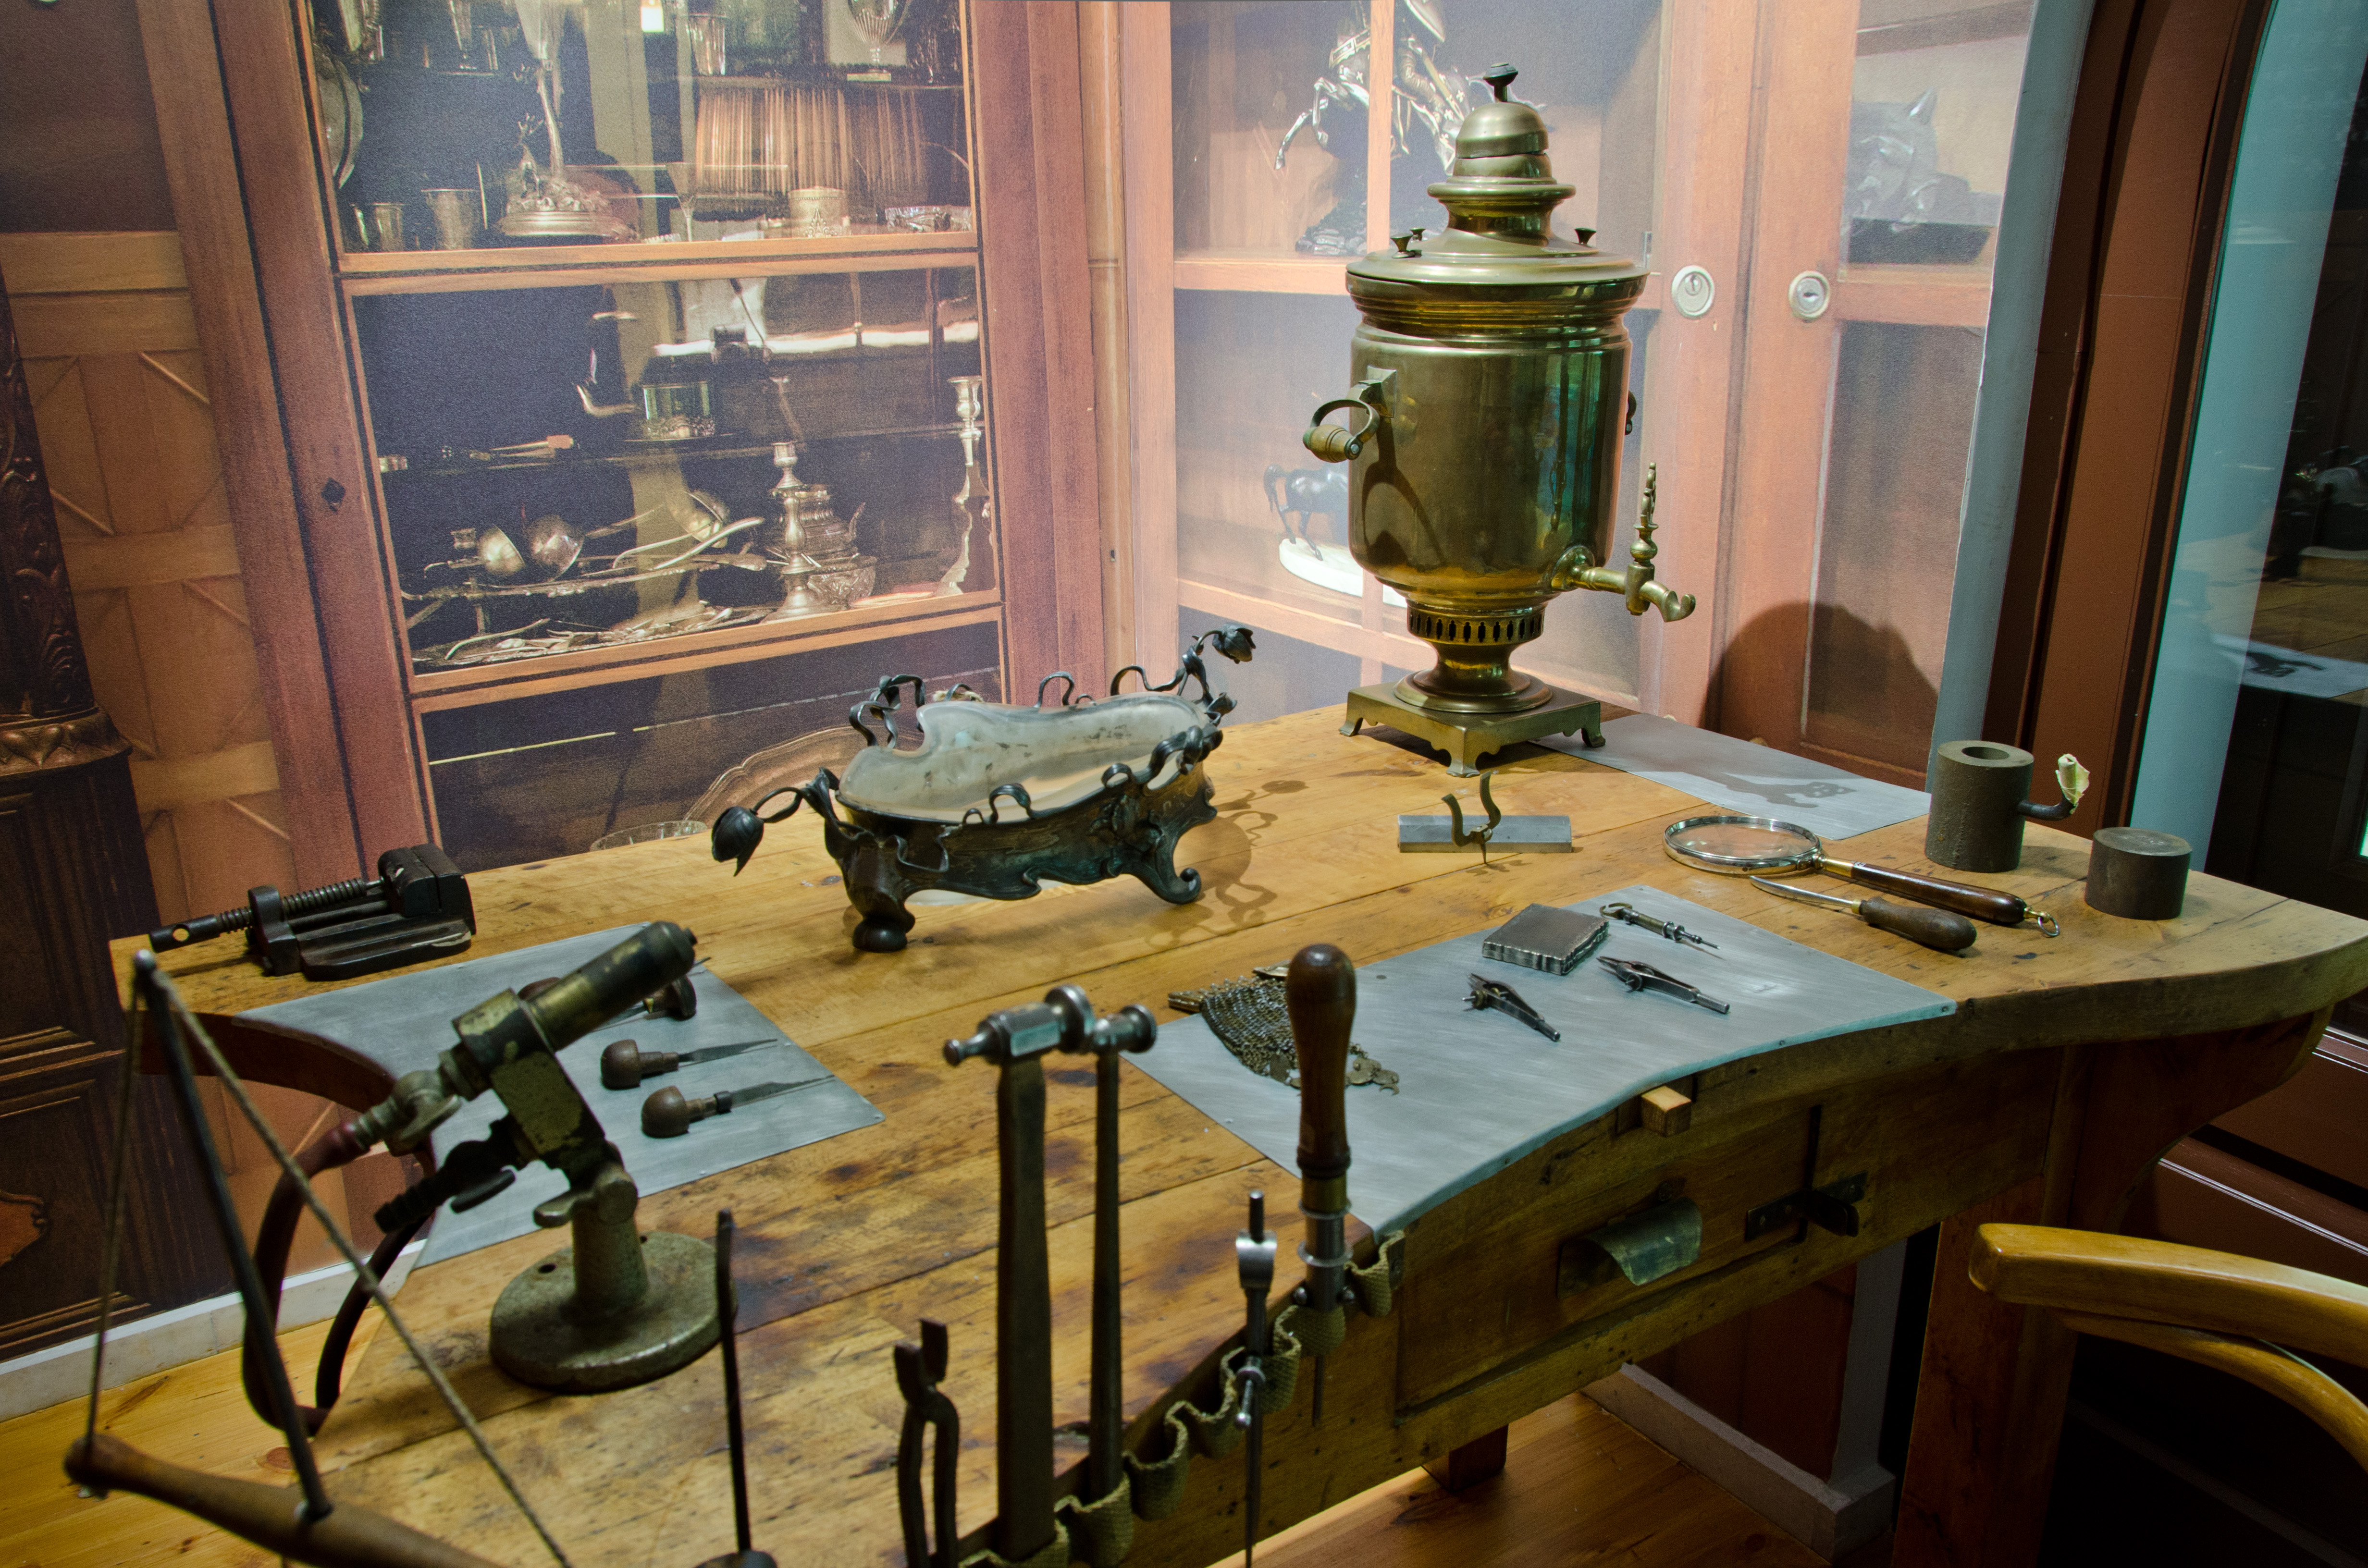 Widok na część wystawy historycznej o mieœcie - zakład ślusarski i grawerniczy z odtworzonym stołem roboczym, narzędziami do grawerowania i obróbki metali.